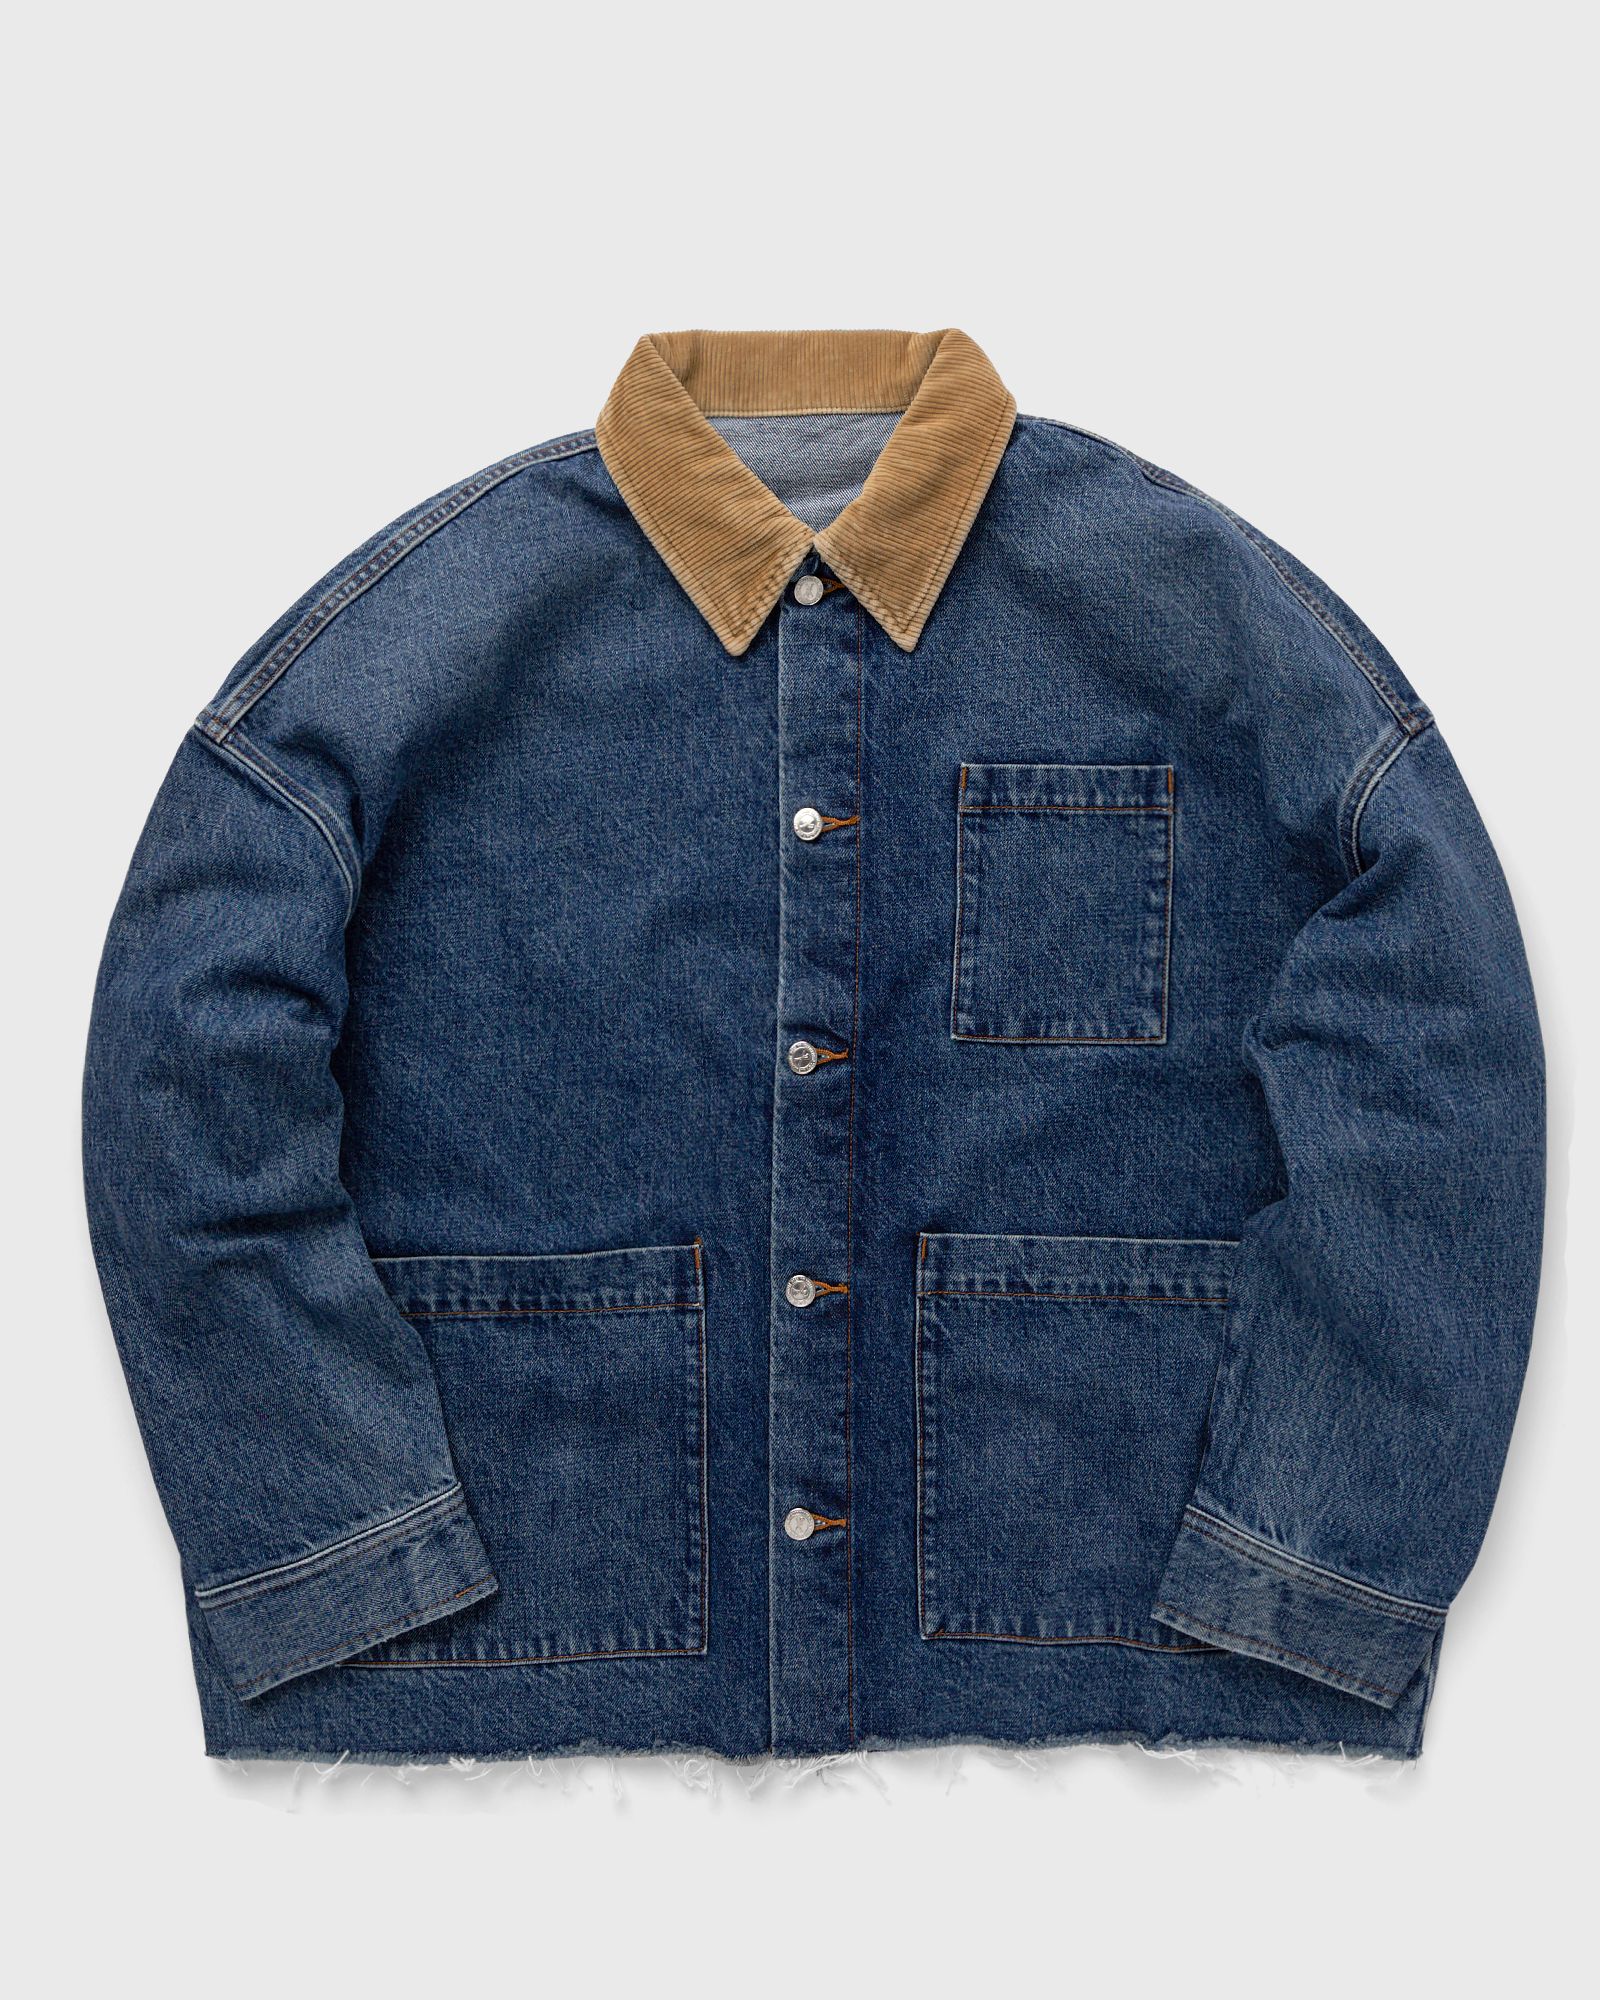 A.P.C. - x jw anderson veste marin men denim jackets|overshirts blue in größe:xl